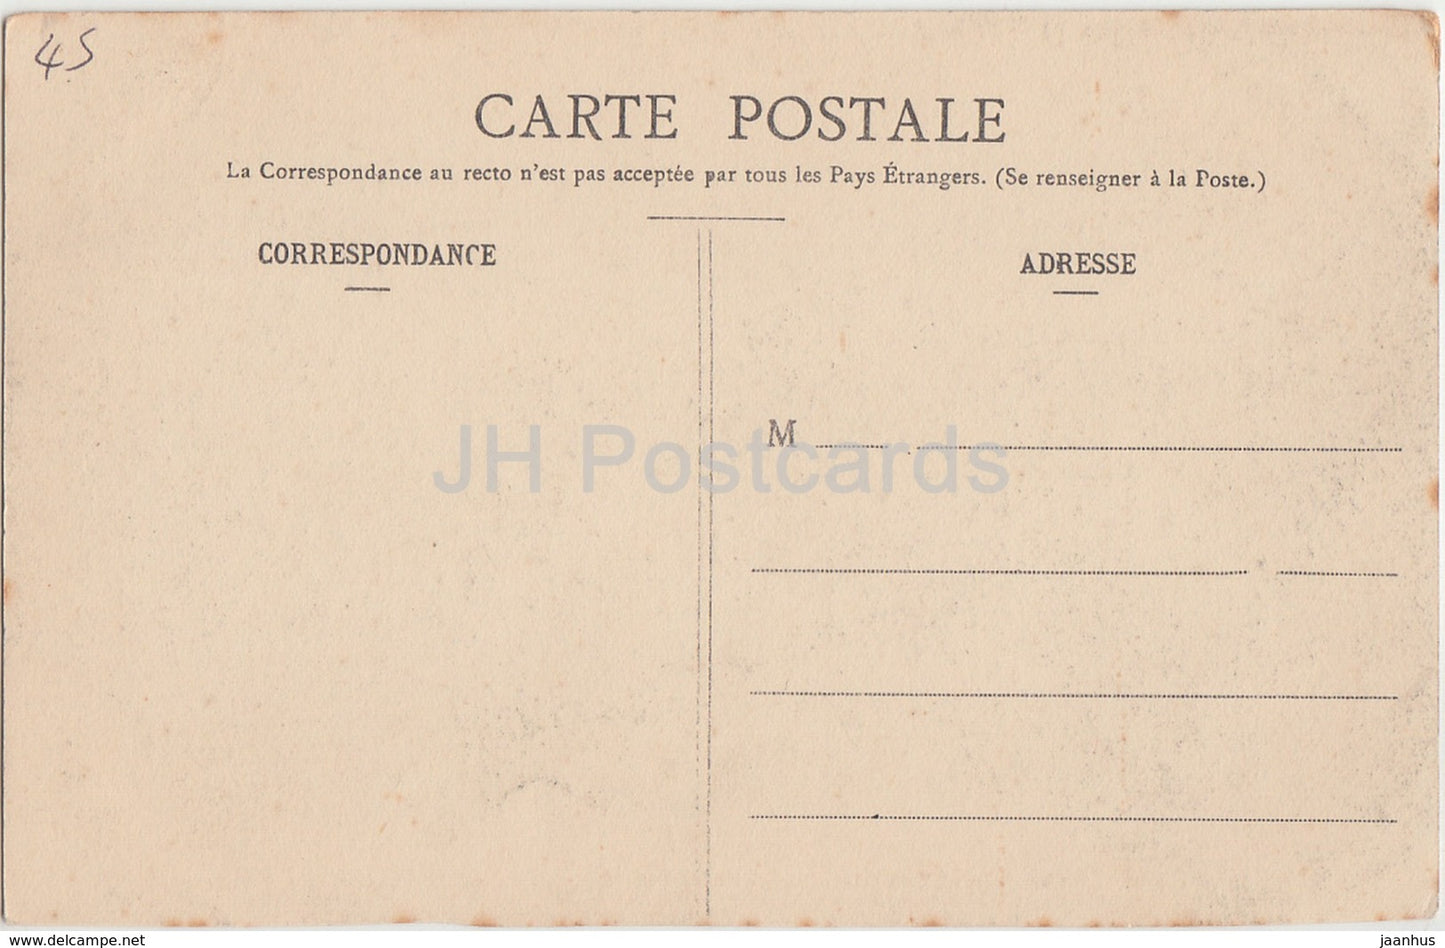 Solterre - Chateau de Labussiere - Maison du Conservateur - Ecluses - Schloss - 7 - alte Postkarte - Frankreich - unbenutzt